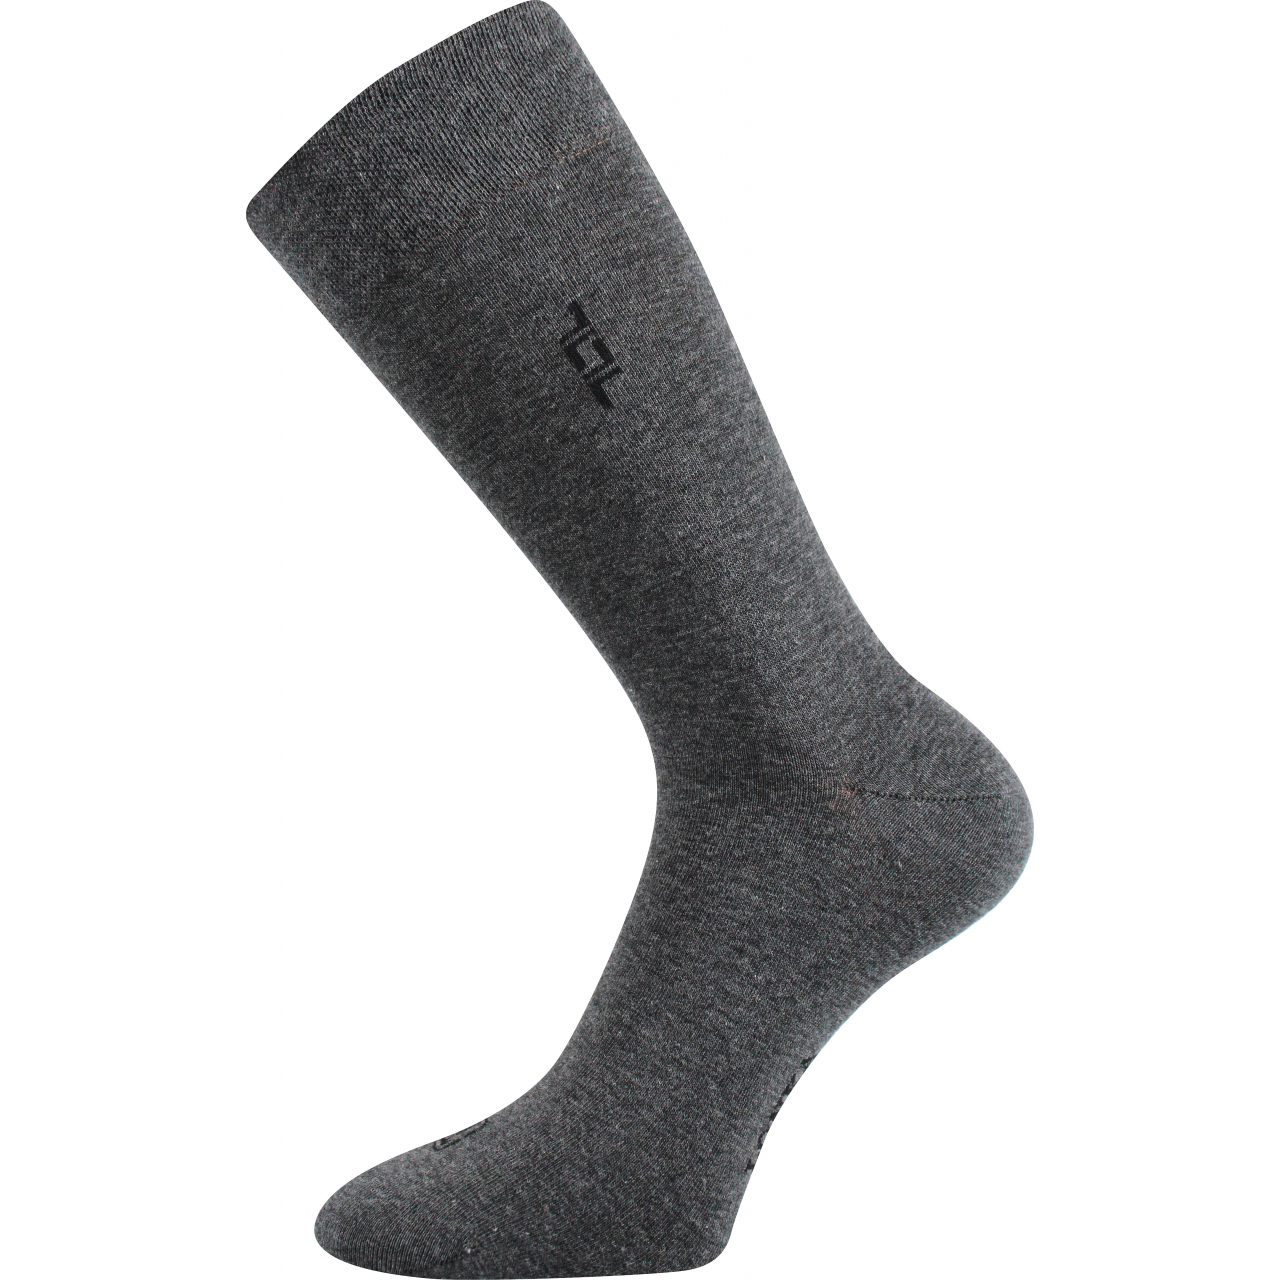 Ponožky pánské společenské Lonka Despok - středně šedé, 39-42